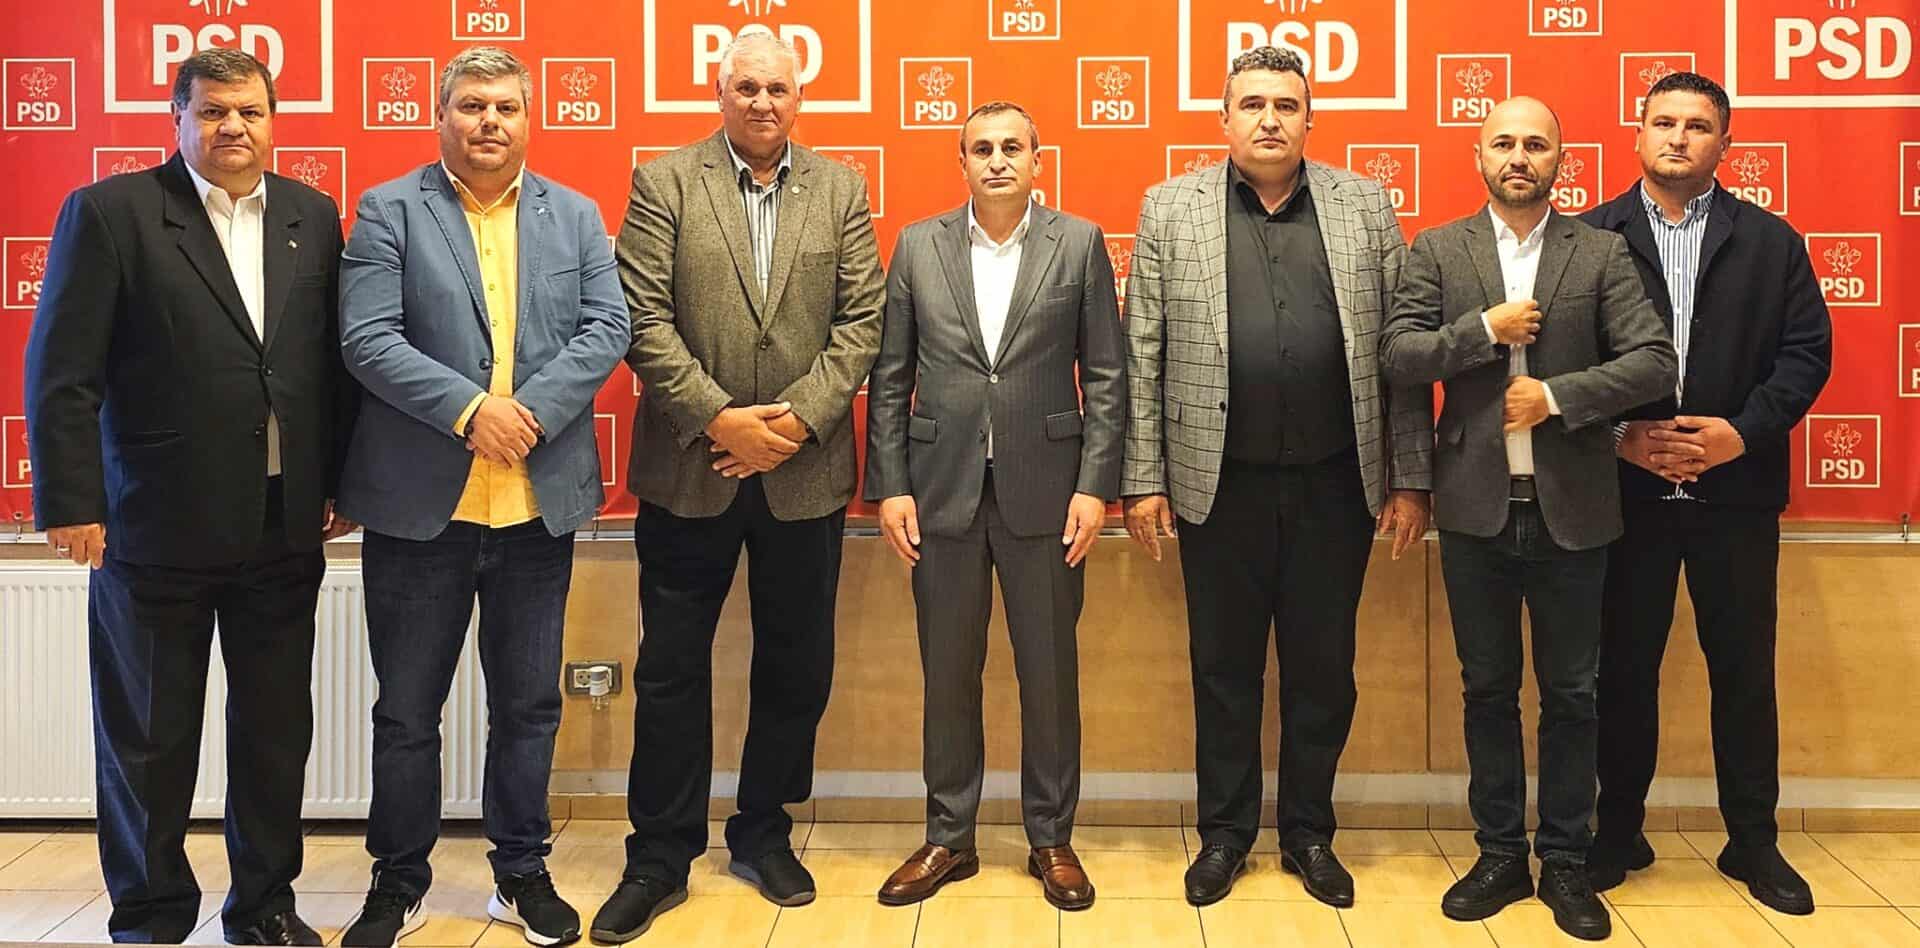 Începe migrația politică: doi primari și mai mulţi consilieri judeţeni şi locali au trecut de la PNL la PSD